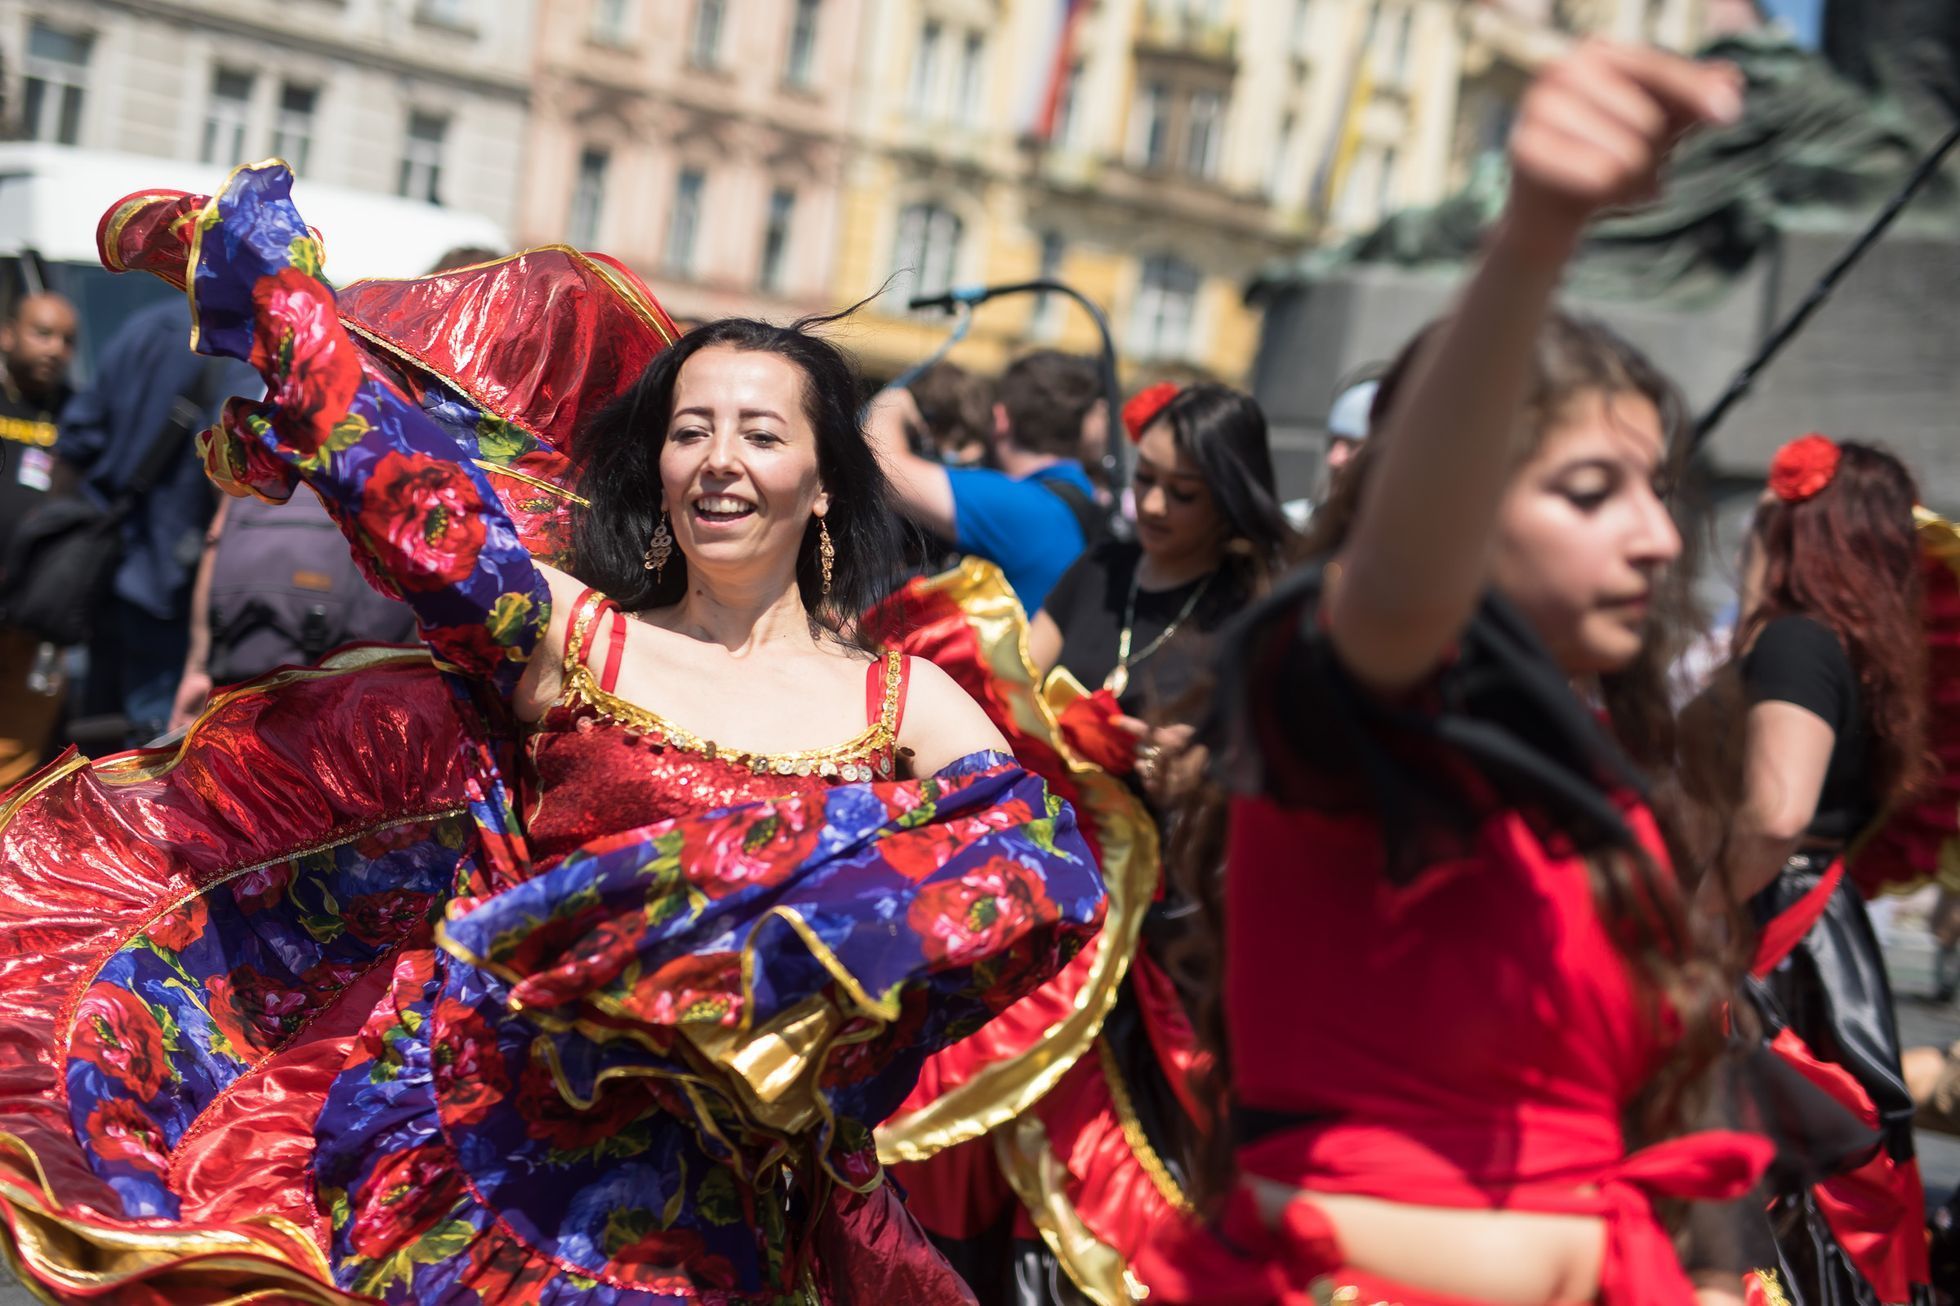 Romský taneční průvod Prahou, festival Khamoro